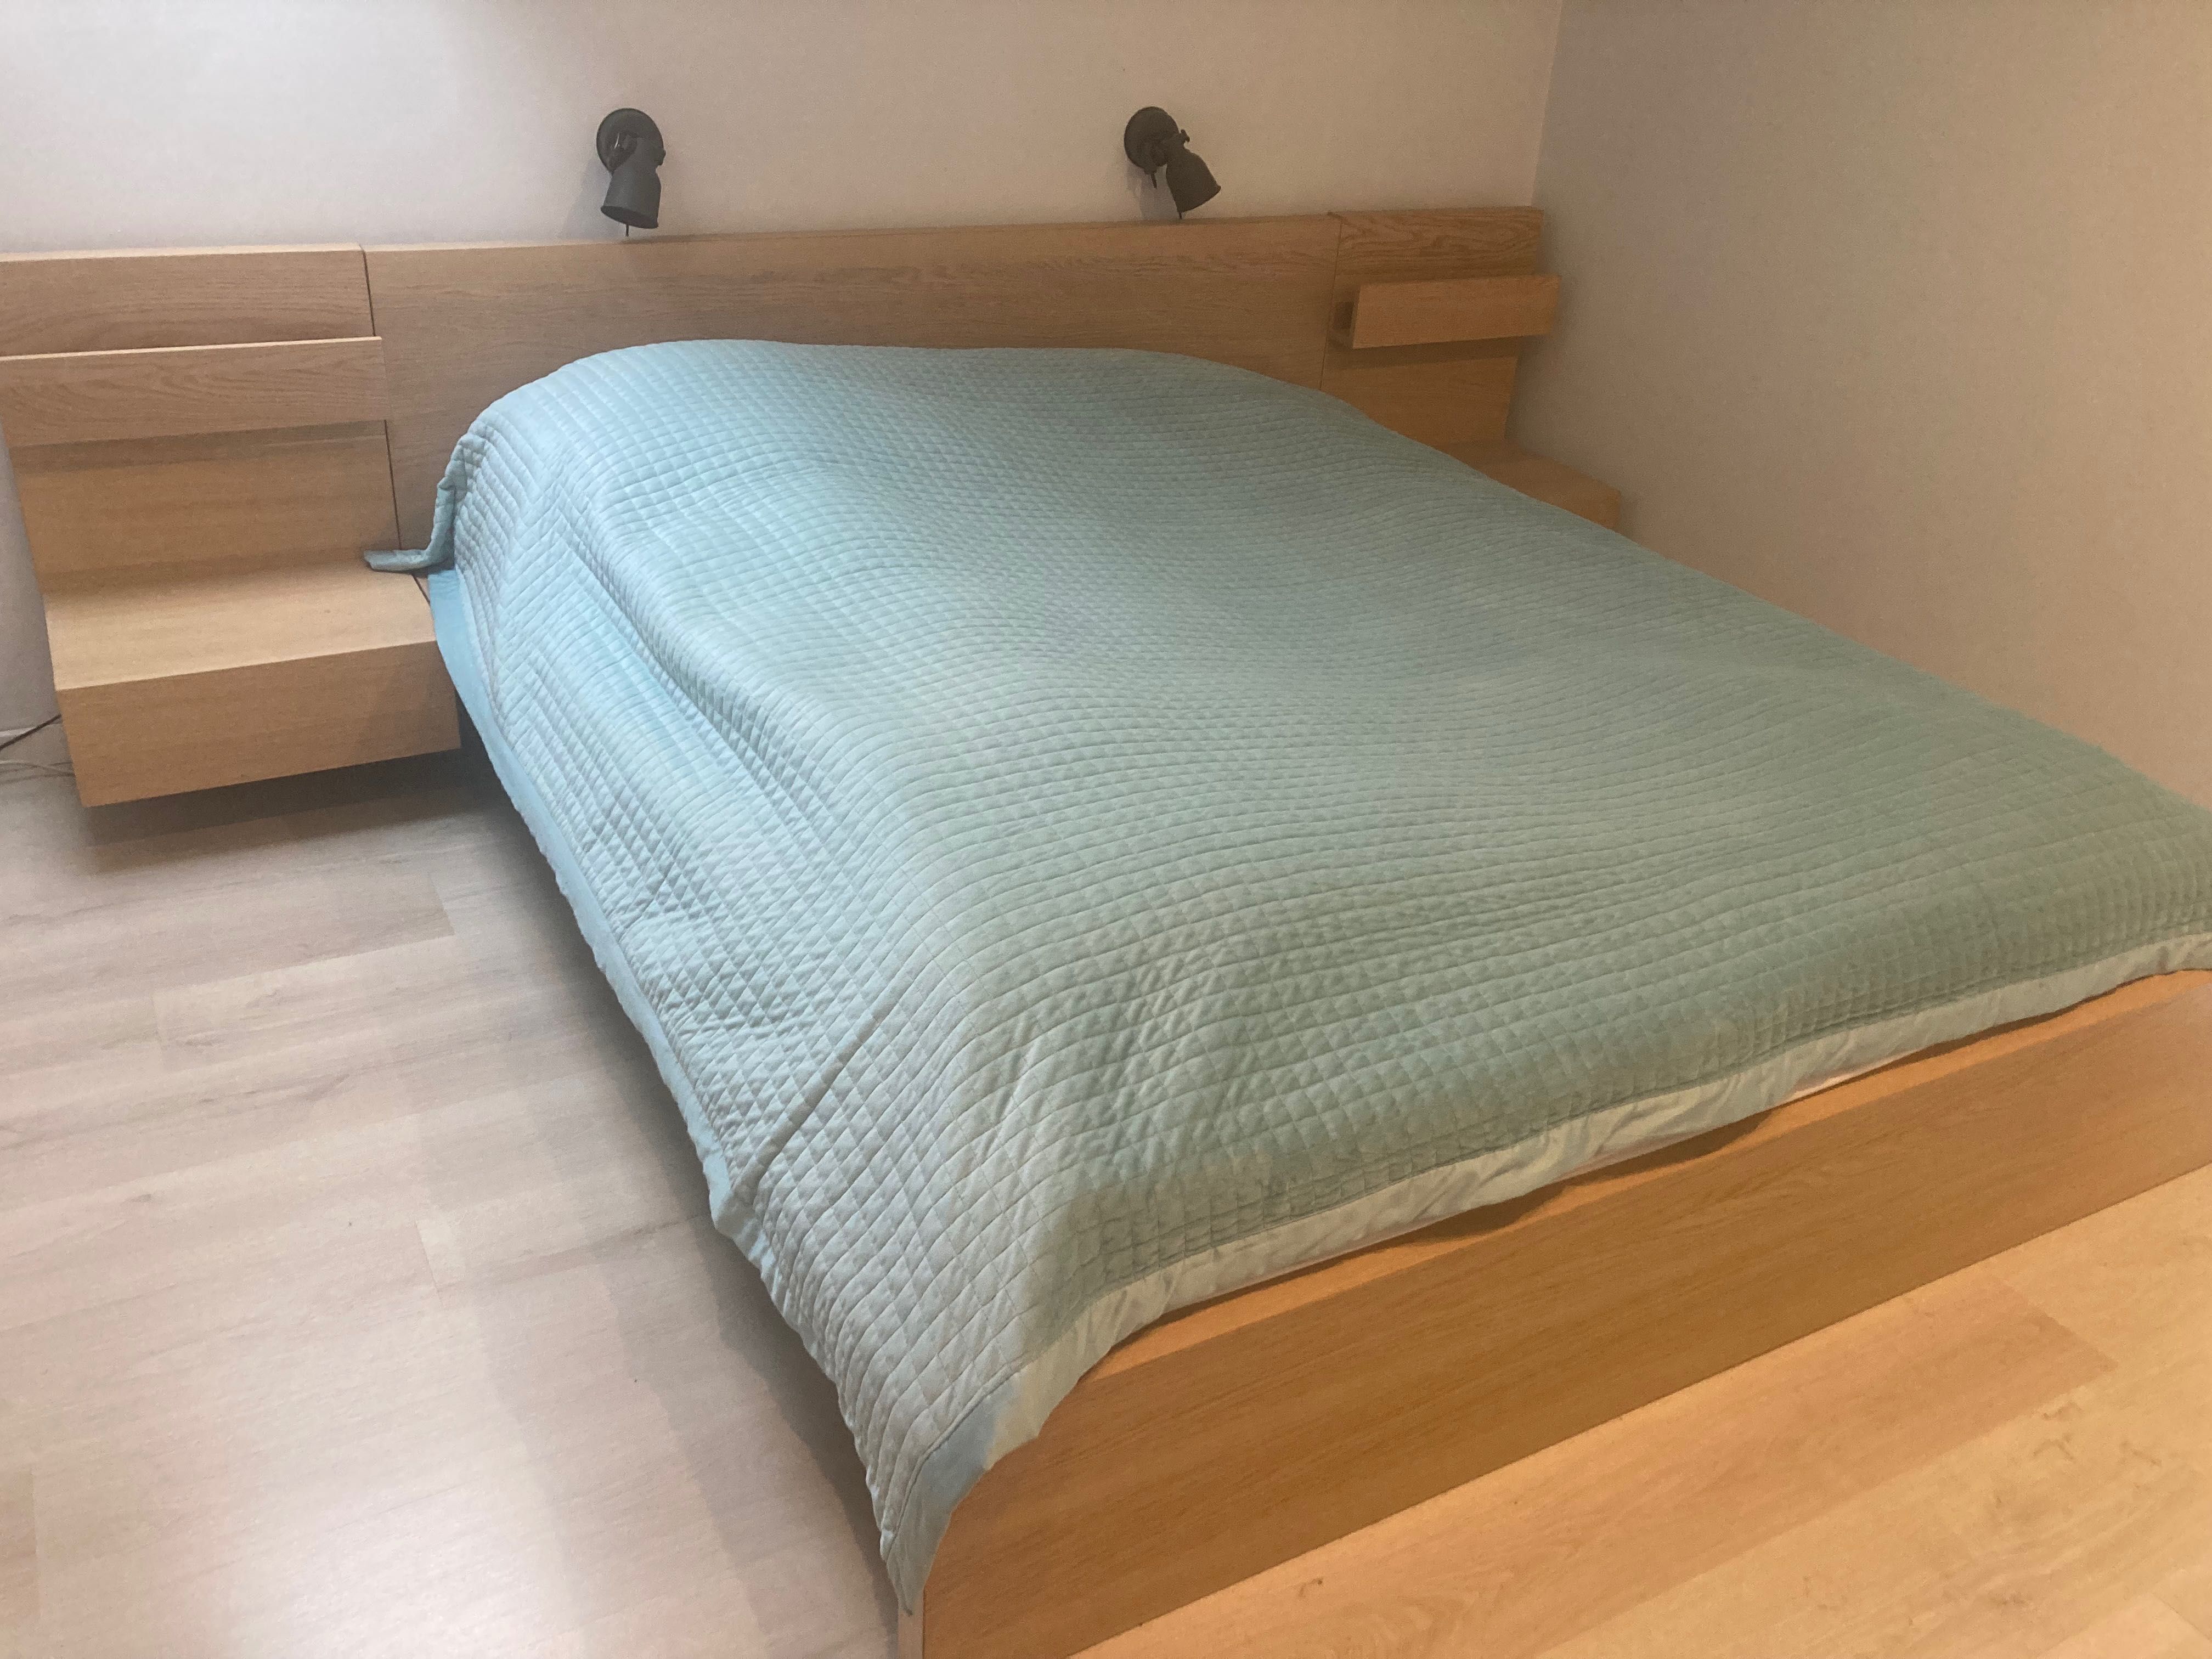 Łóżko MALM 160x200 Ikea